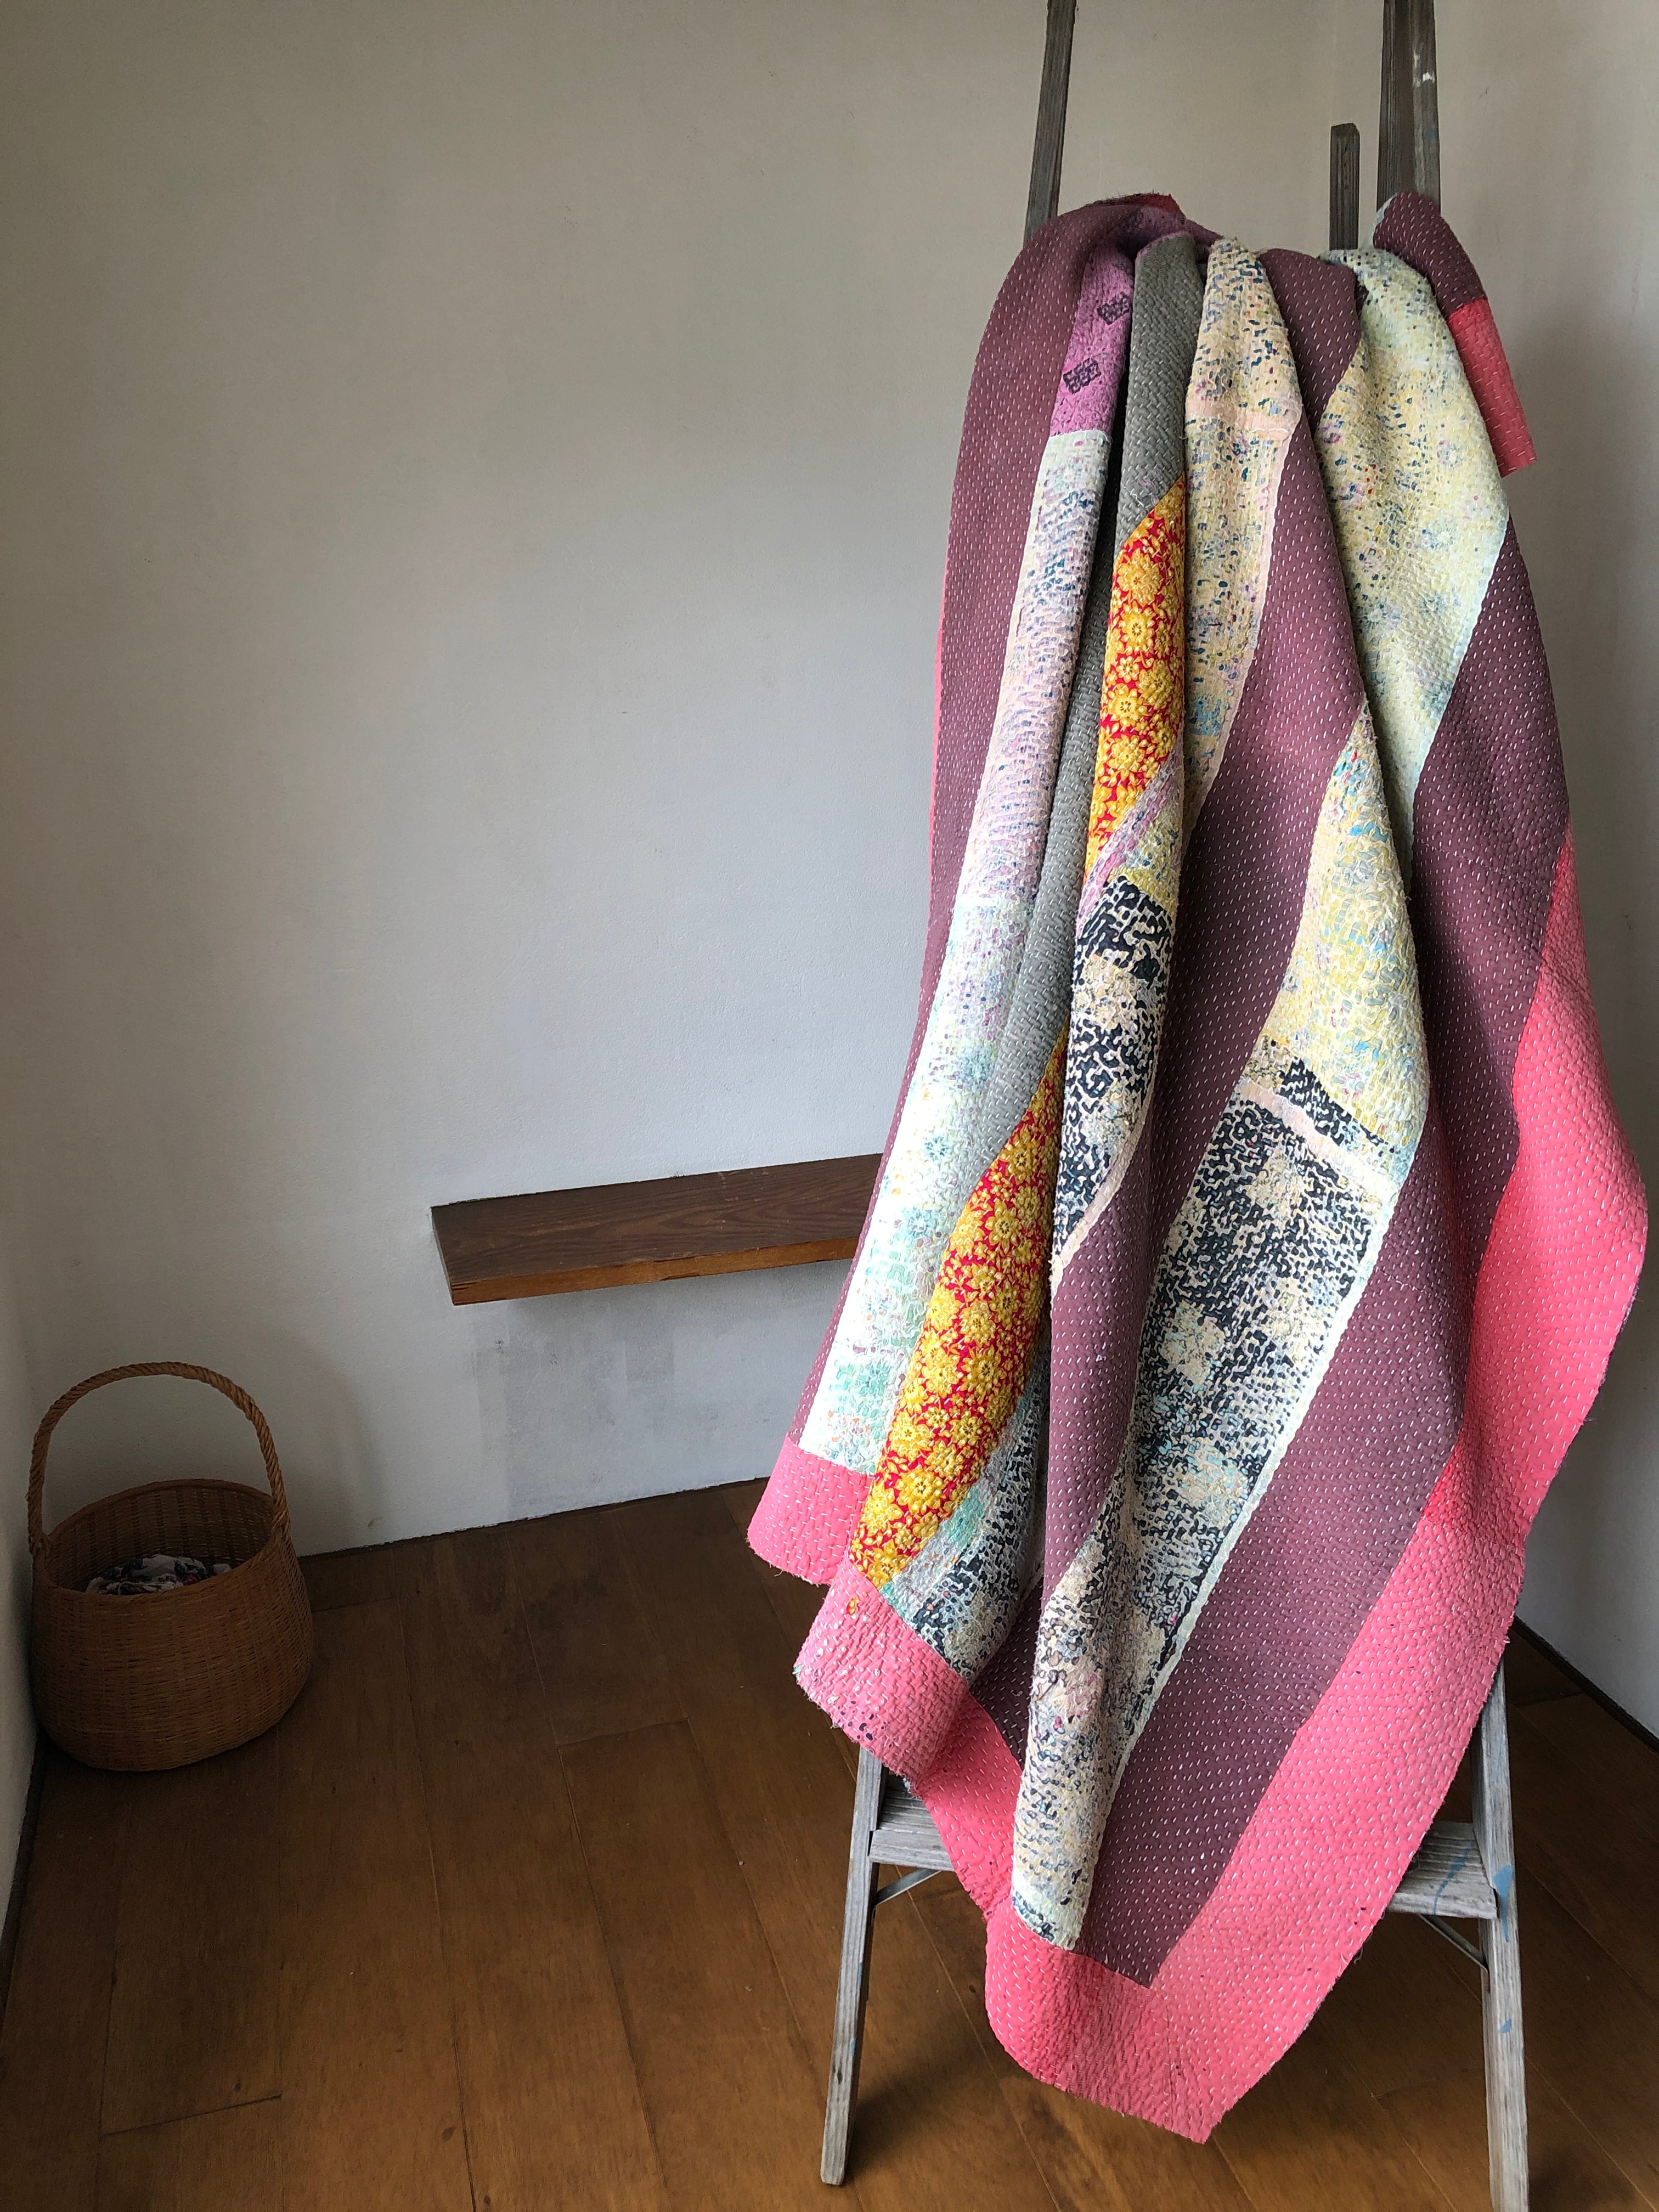 Vintage pink patchwork kantha quilt カンタキルト ラリーキルト